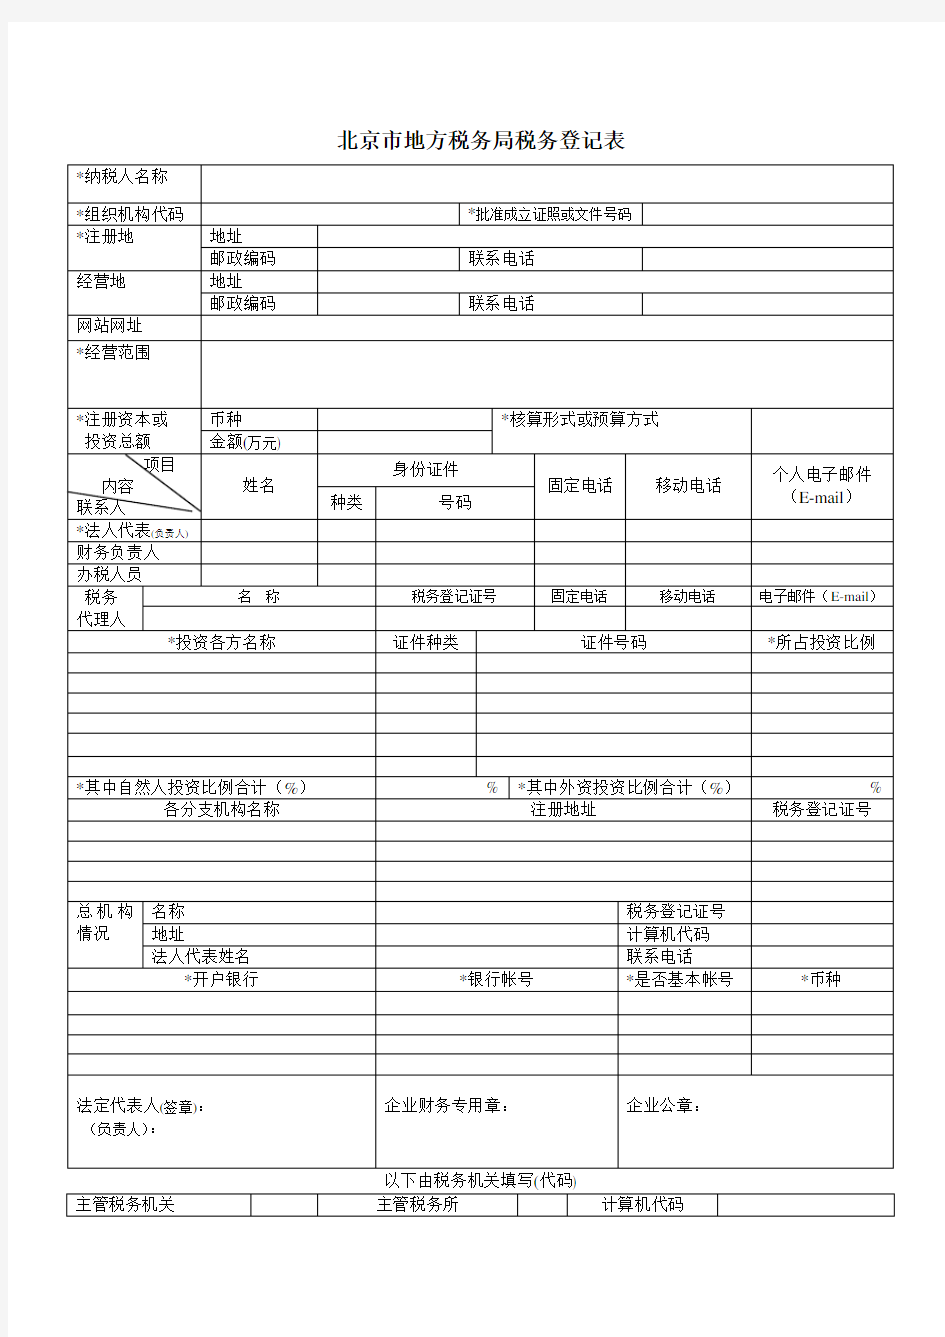 北京市地方税务局税务登记表